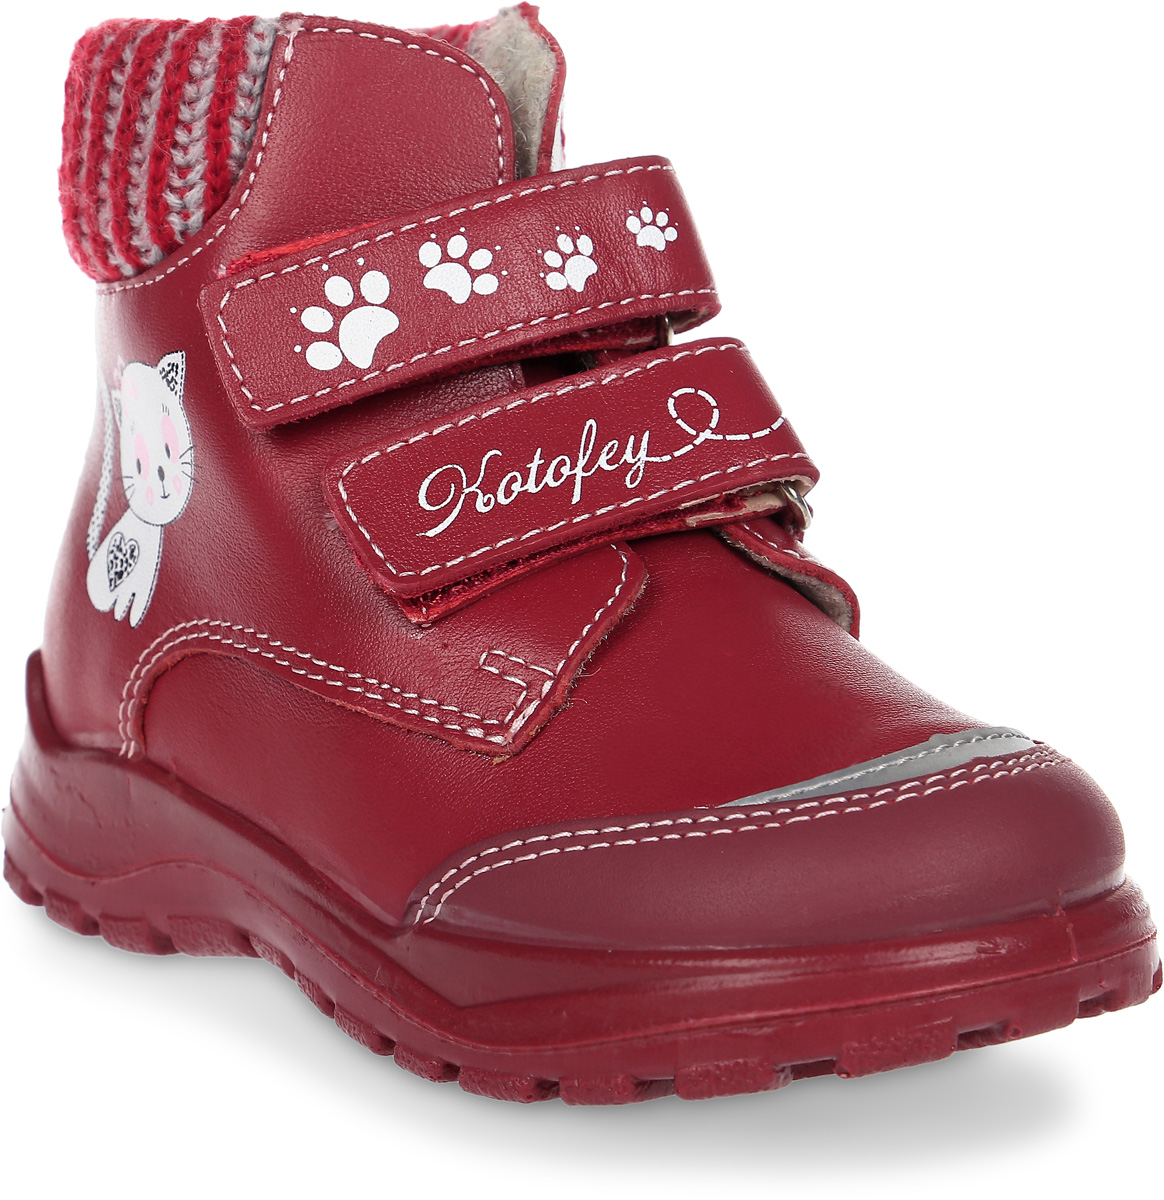 Ботинки для девочки Котофей, цвет: бордовый. 152142-31. Размер 19